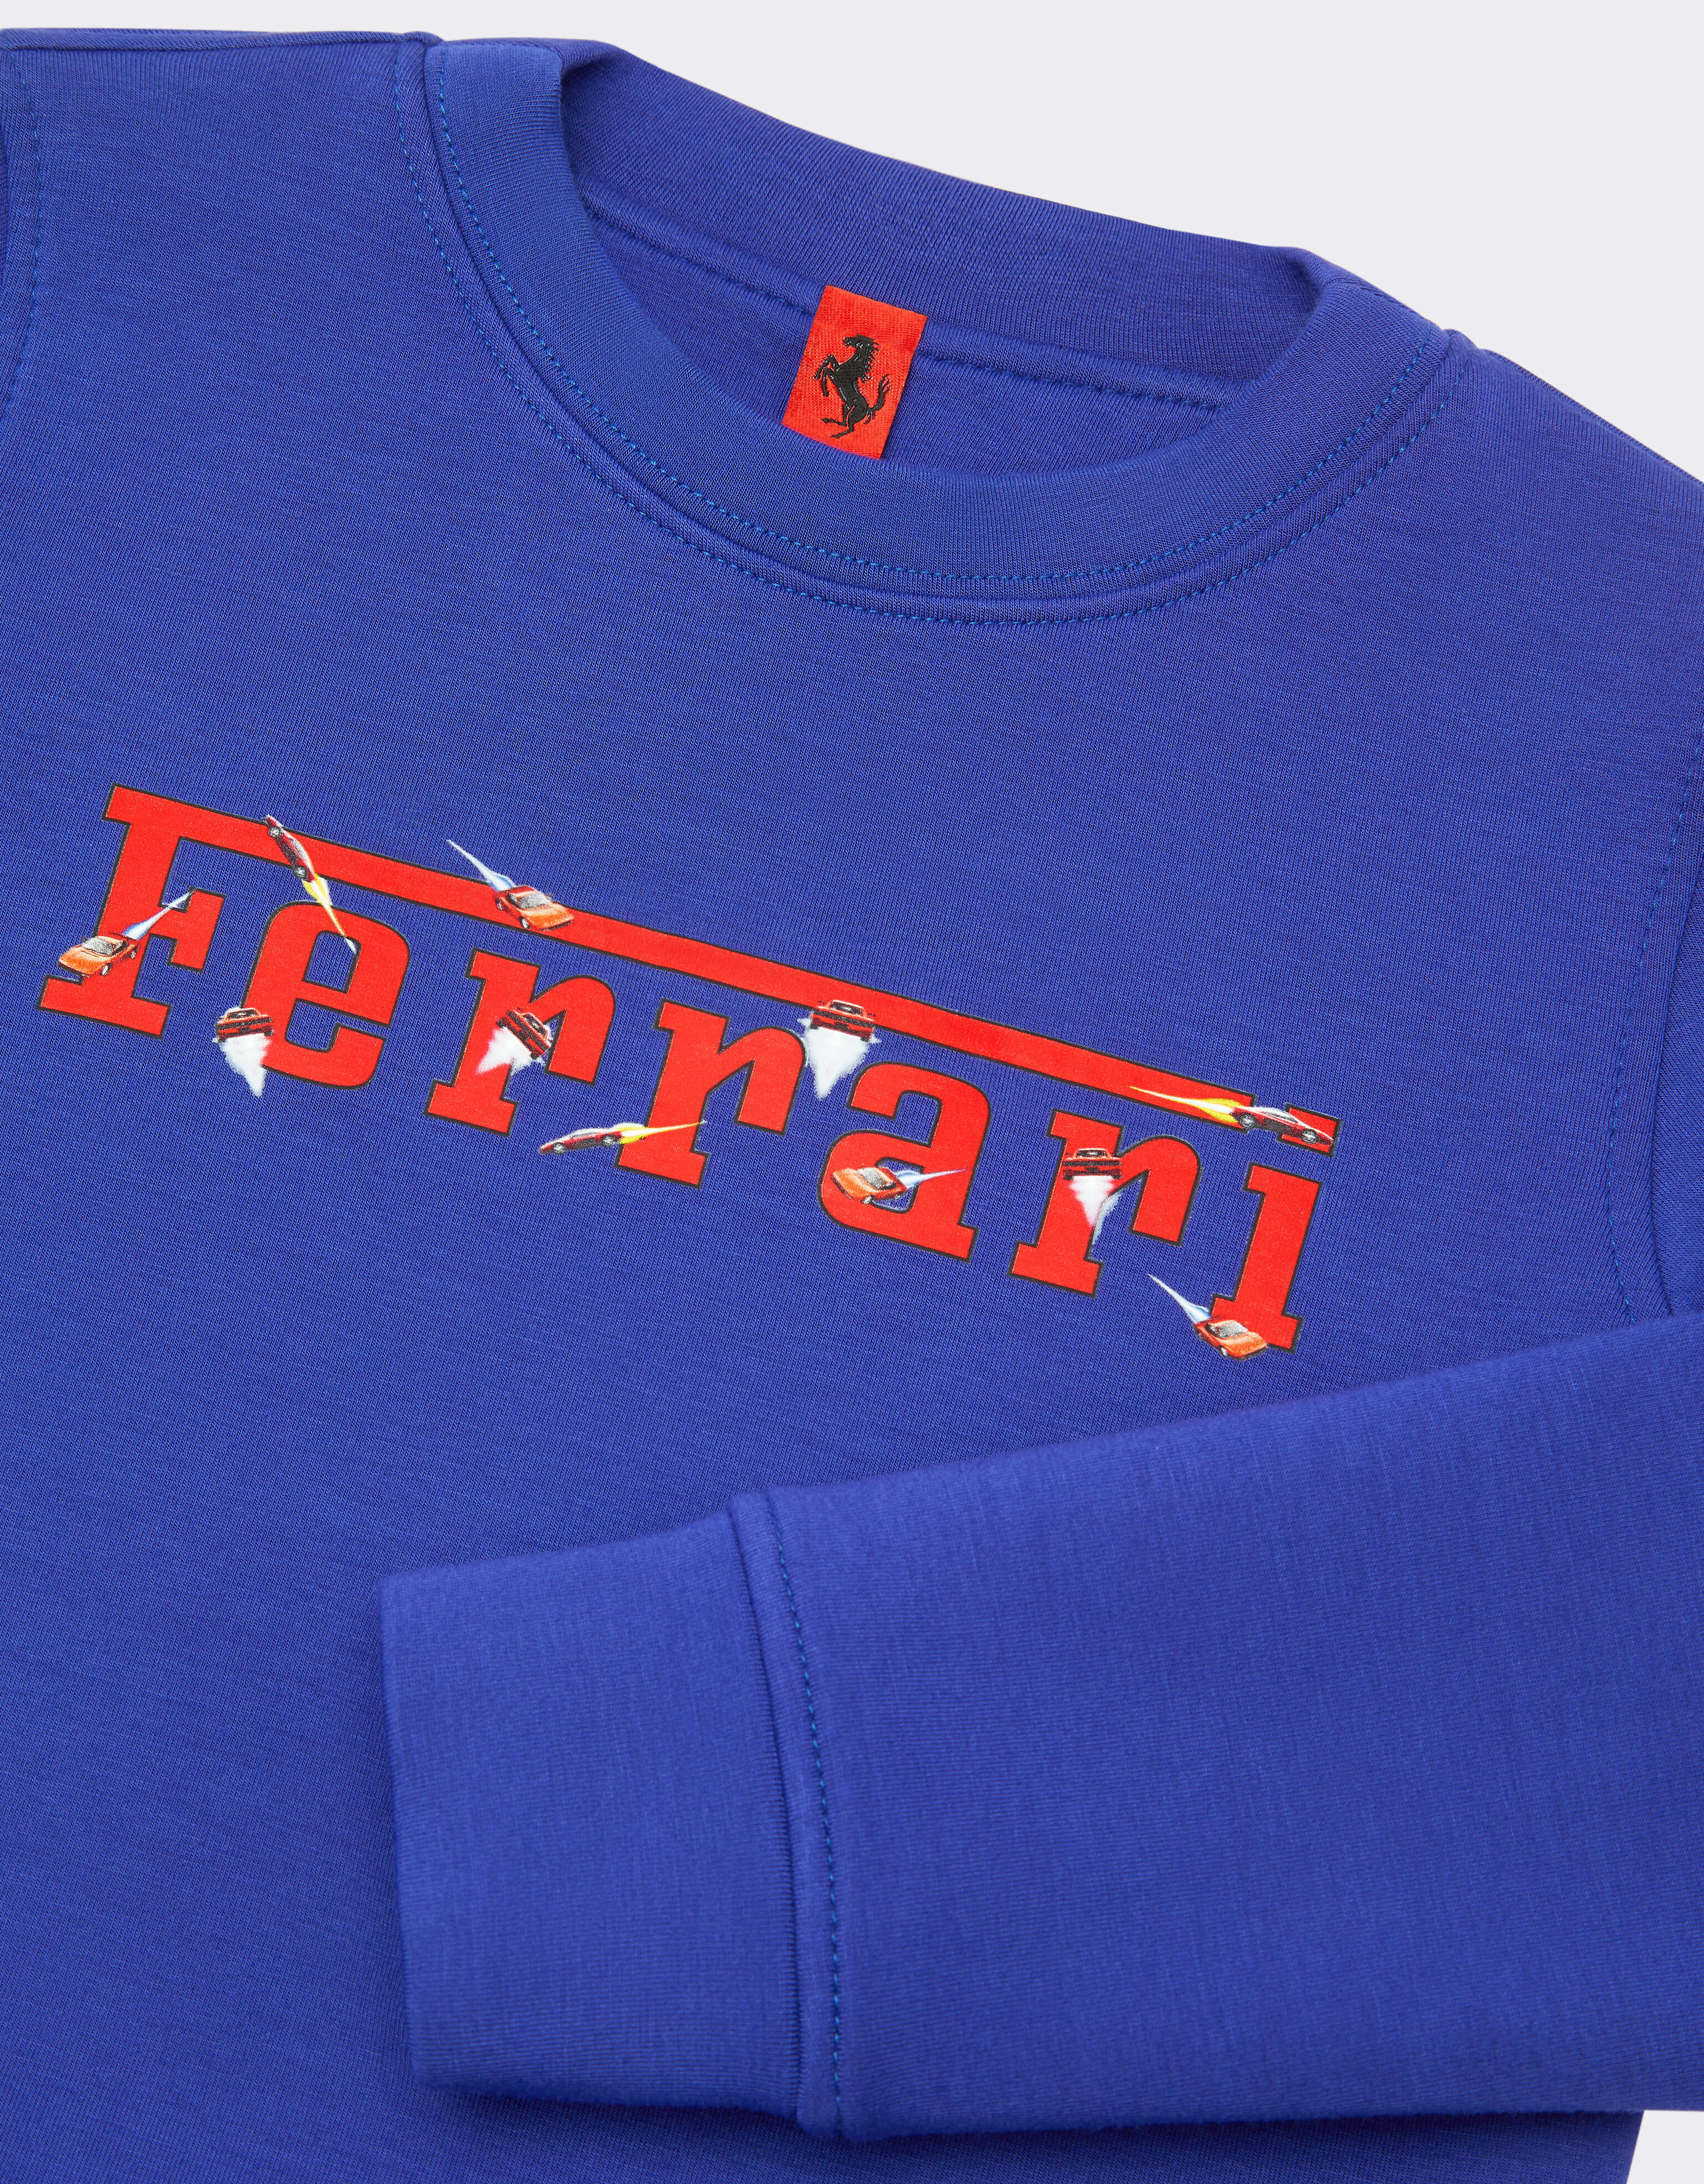 Ferrari Children’s scuba sweatshirt with Ferrari logo 古蓝色 20159fK